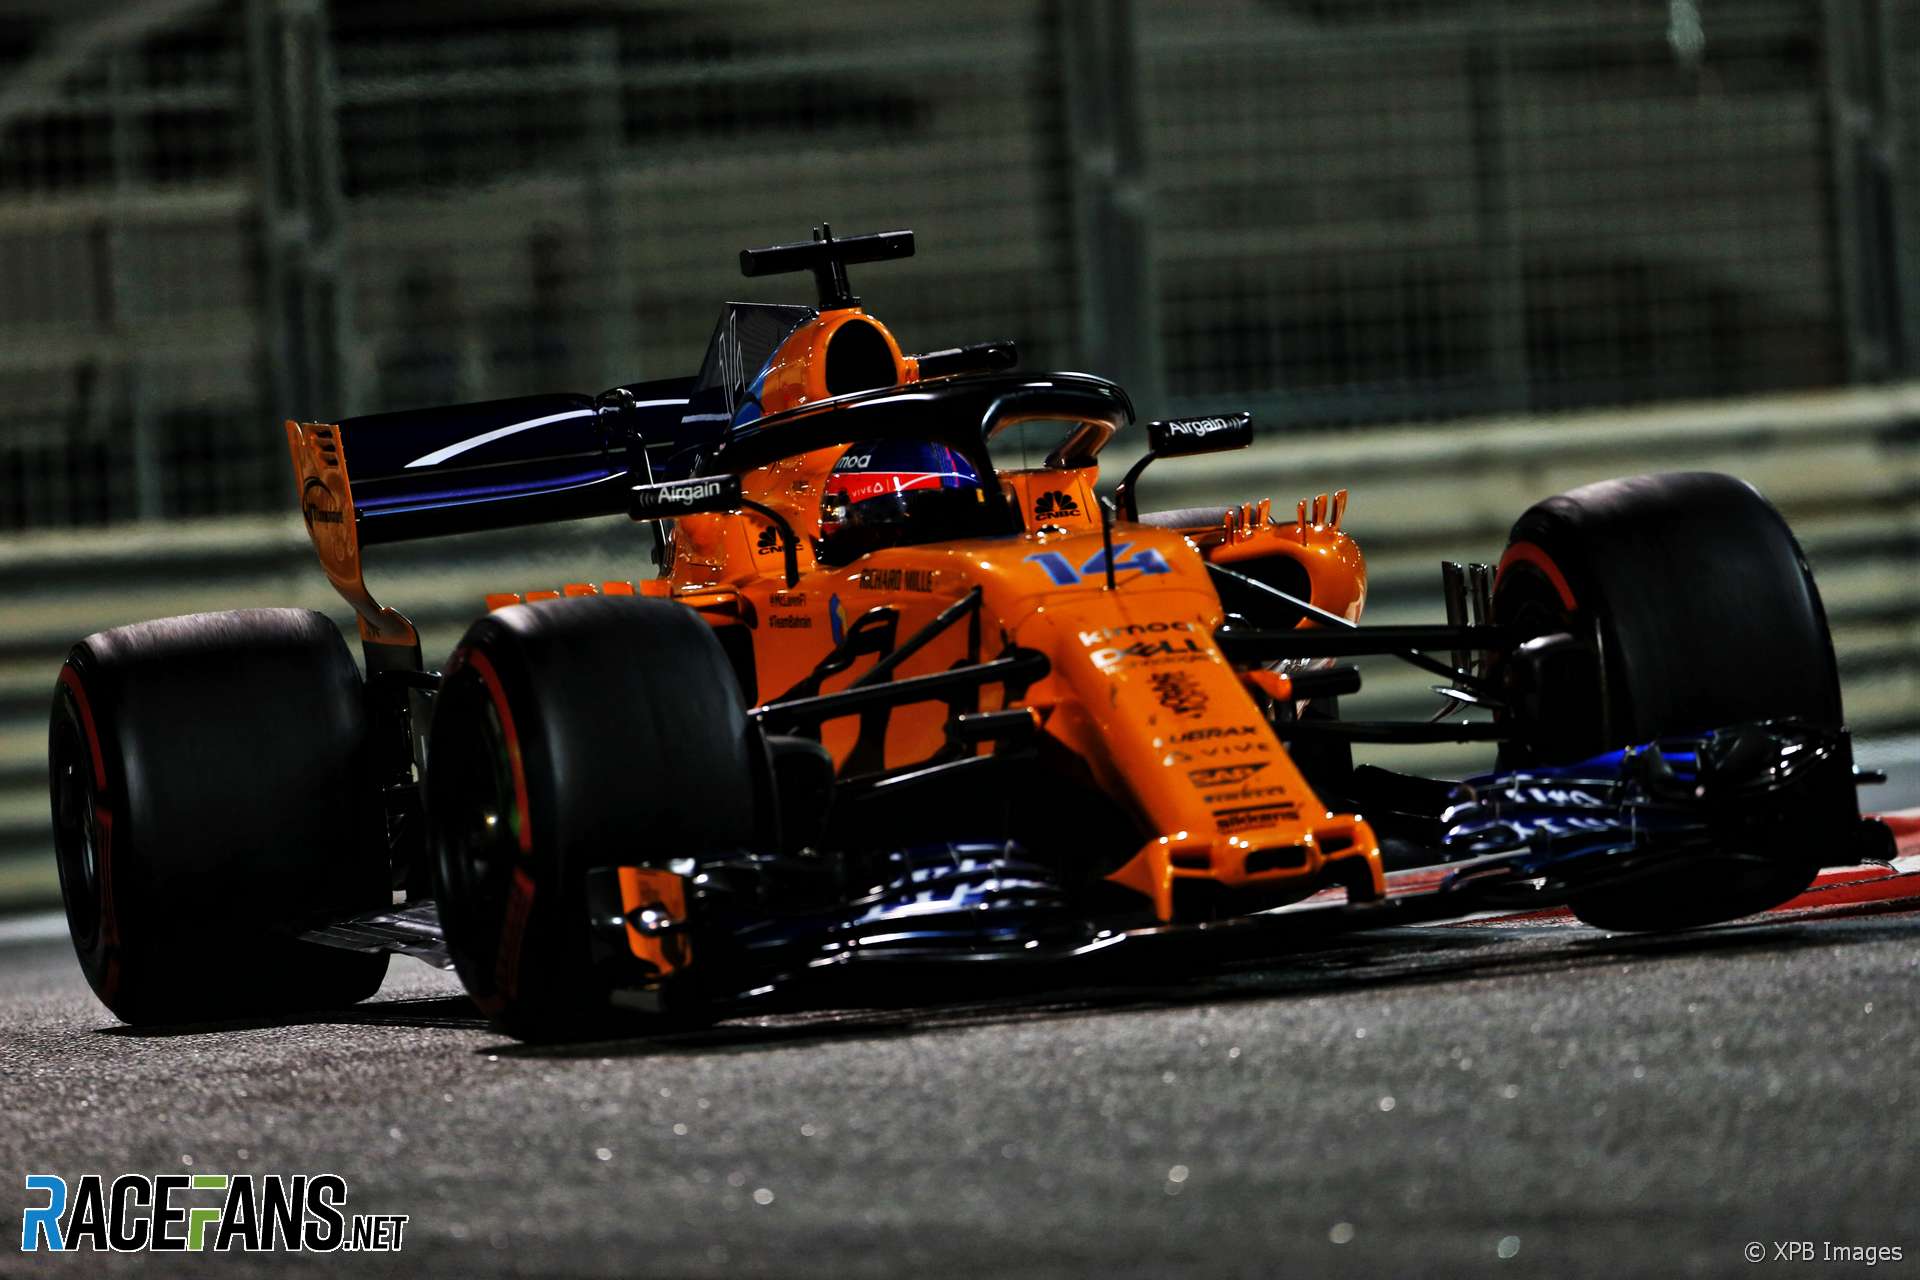 Fernando Alonso, McLaren, Yas Marina, 2018